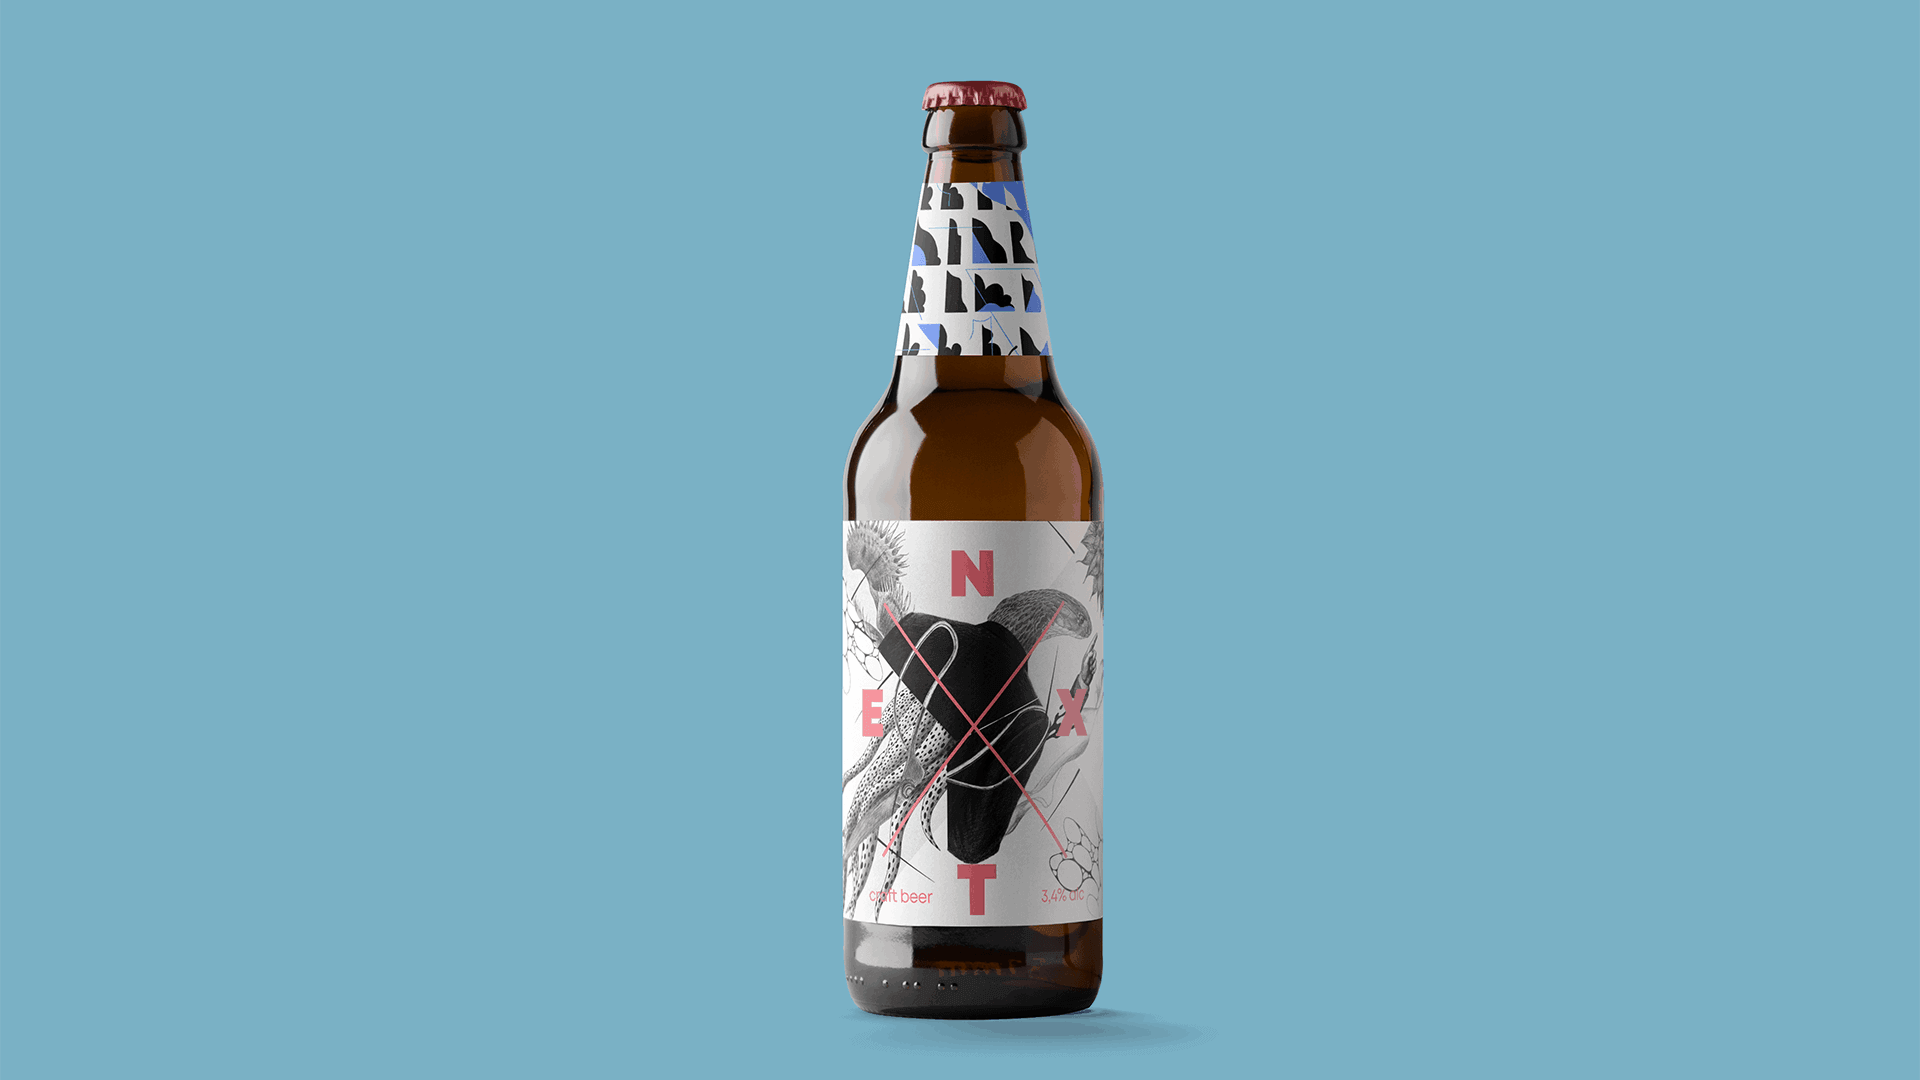 01. NEXT craft beer